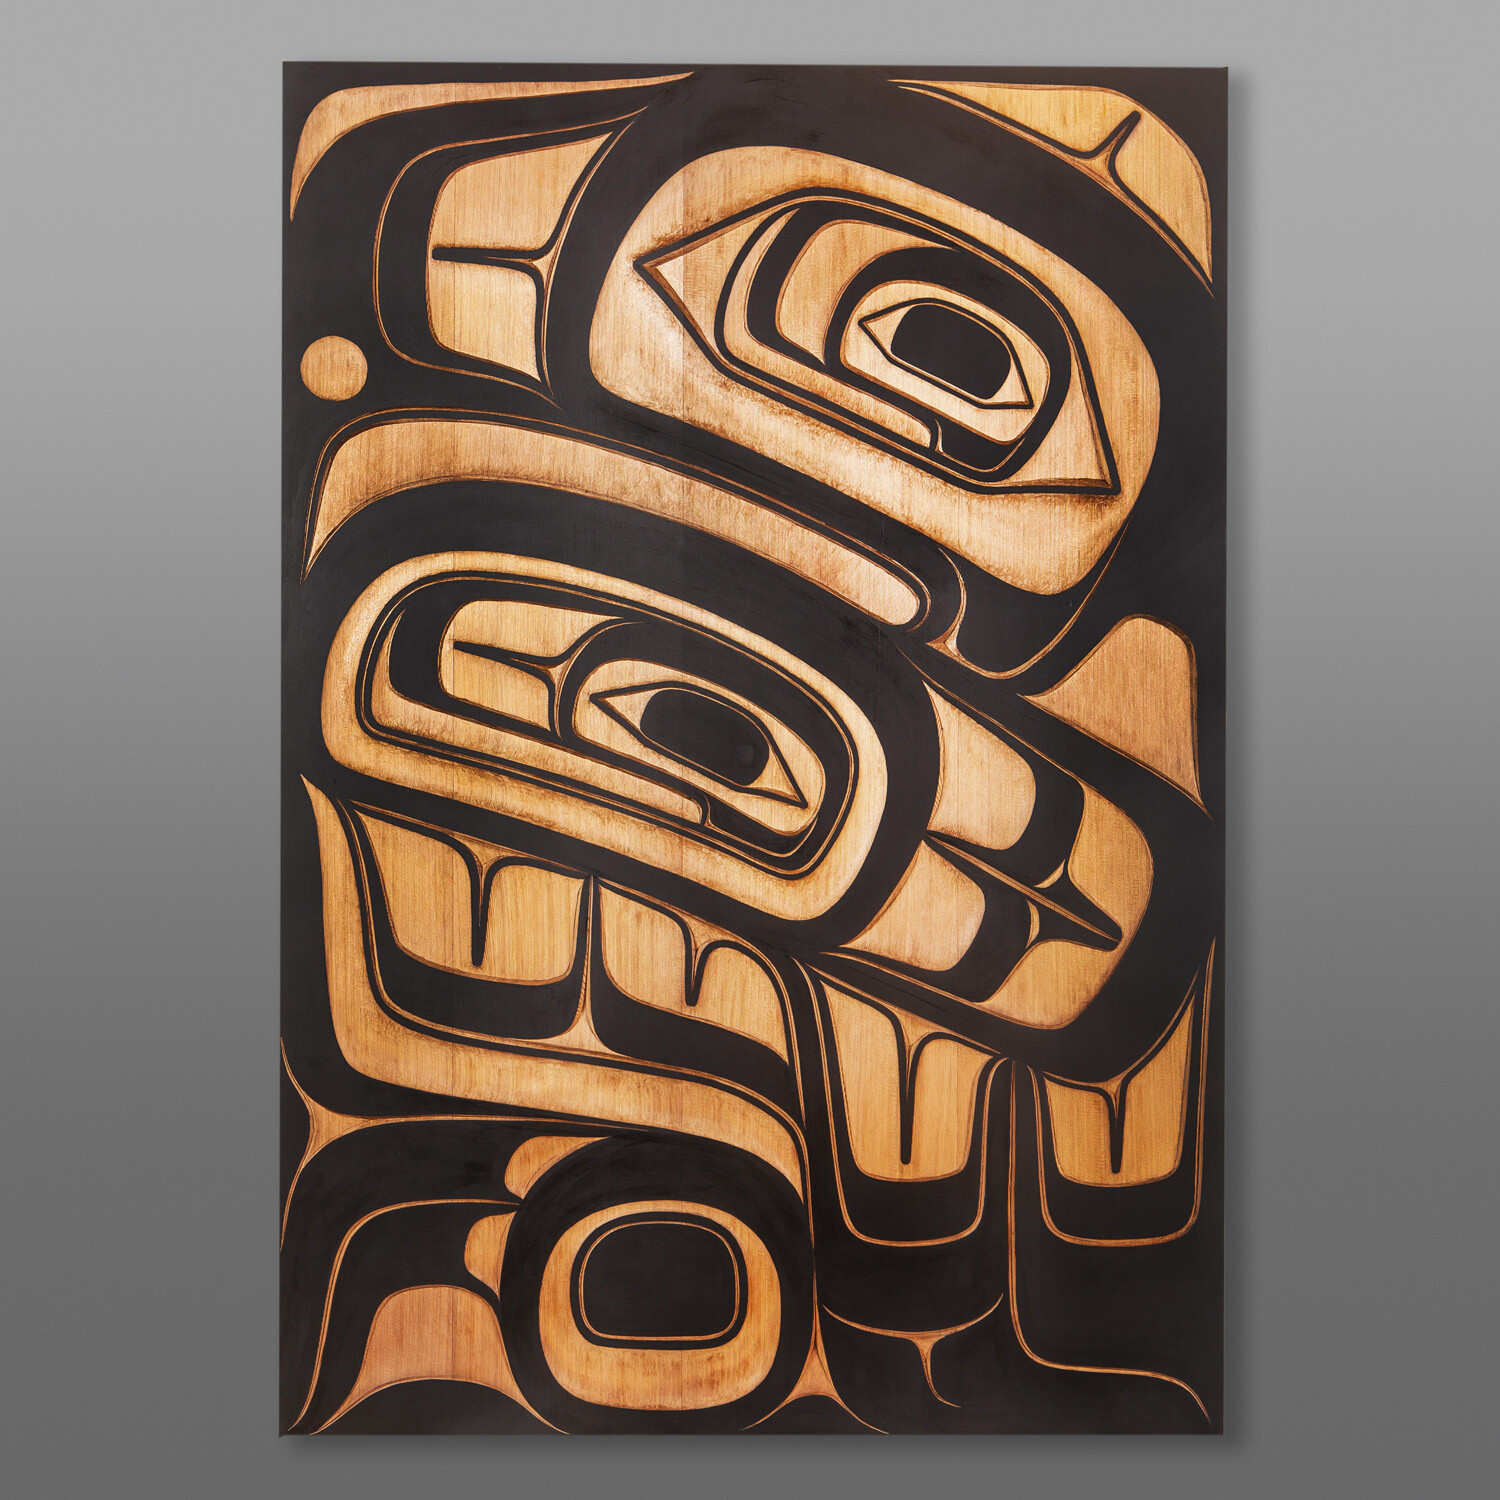 Guud Ewaans - Big Eagle
Ernest Swanson
Haida
Red cedar, paint
48” x 33” x 3¾
$9500